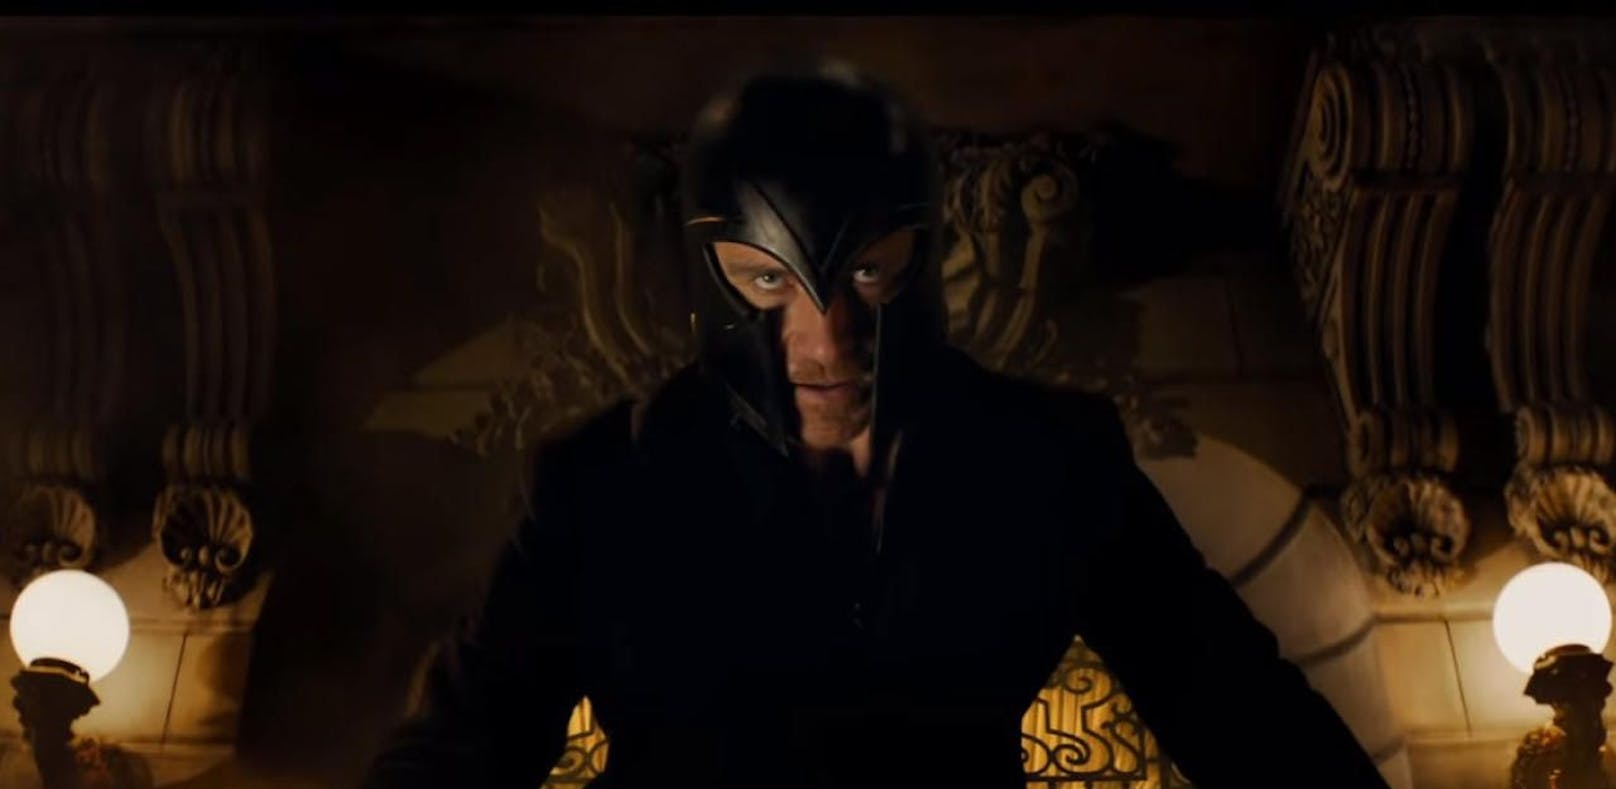 Düsterer erster Trailer für "X-Men: Dark Phoenix"